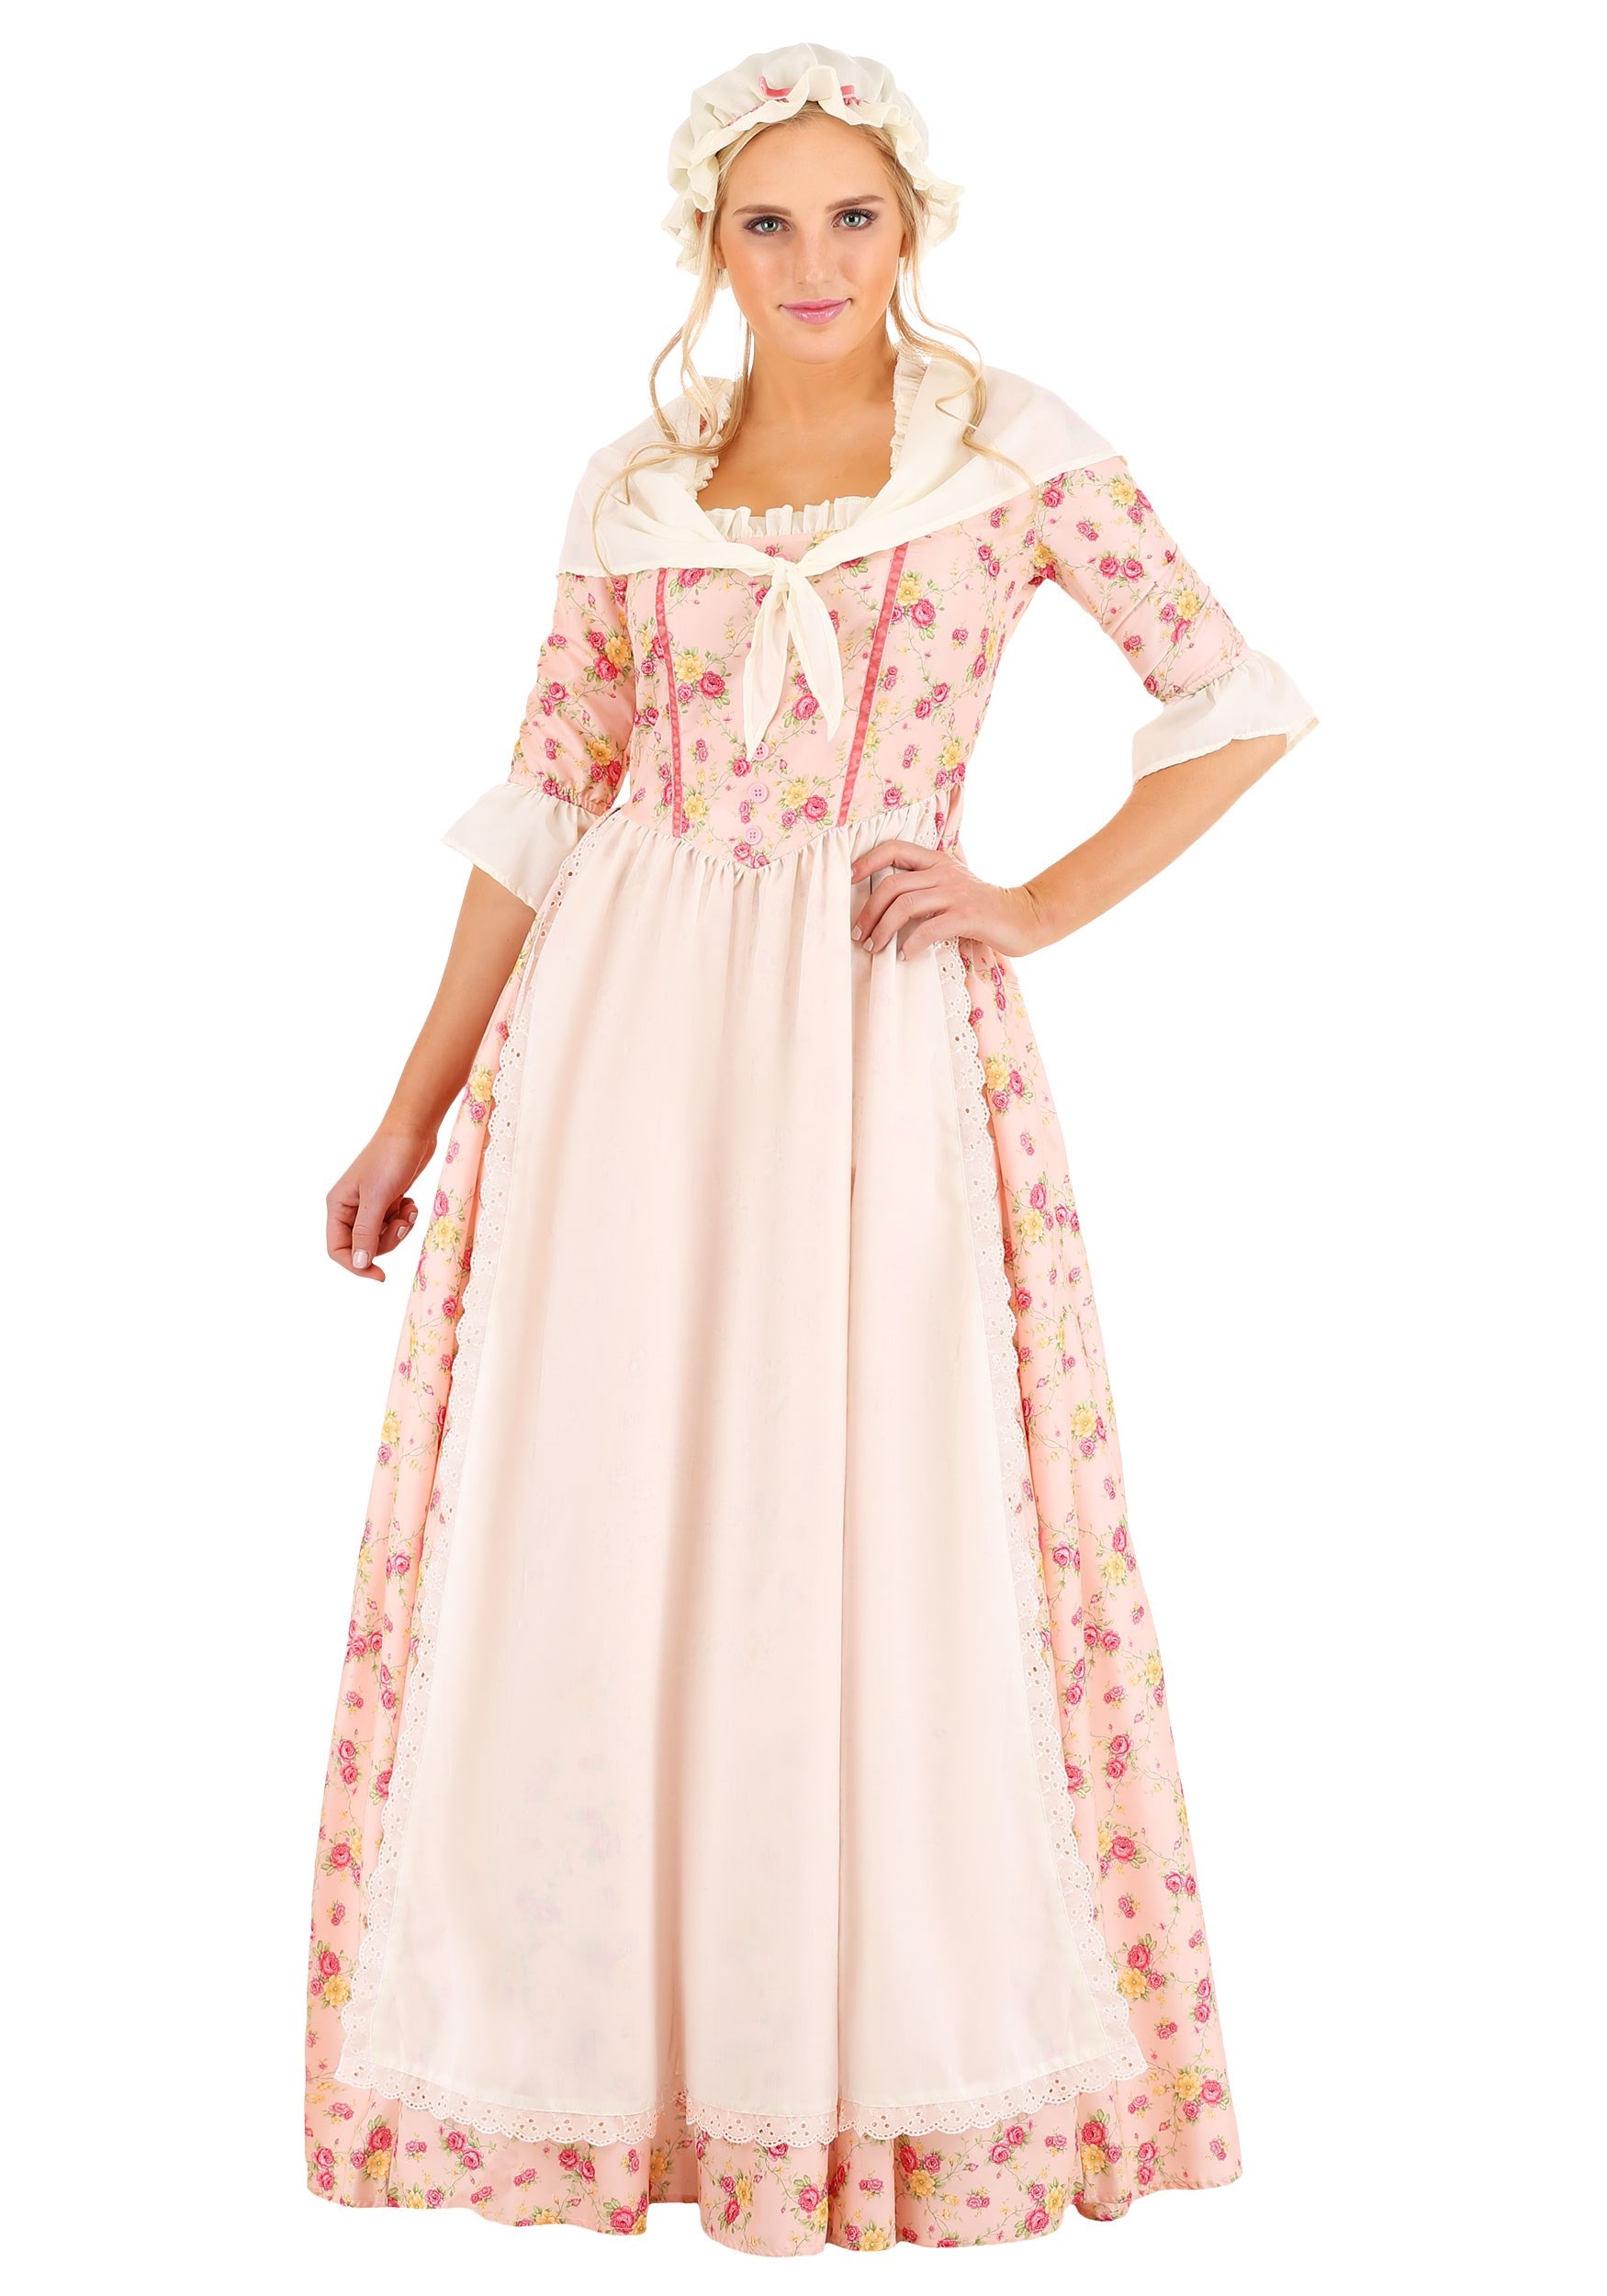 Colonial Dress Women's Fancy Dress Costume